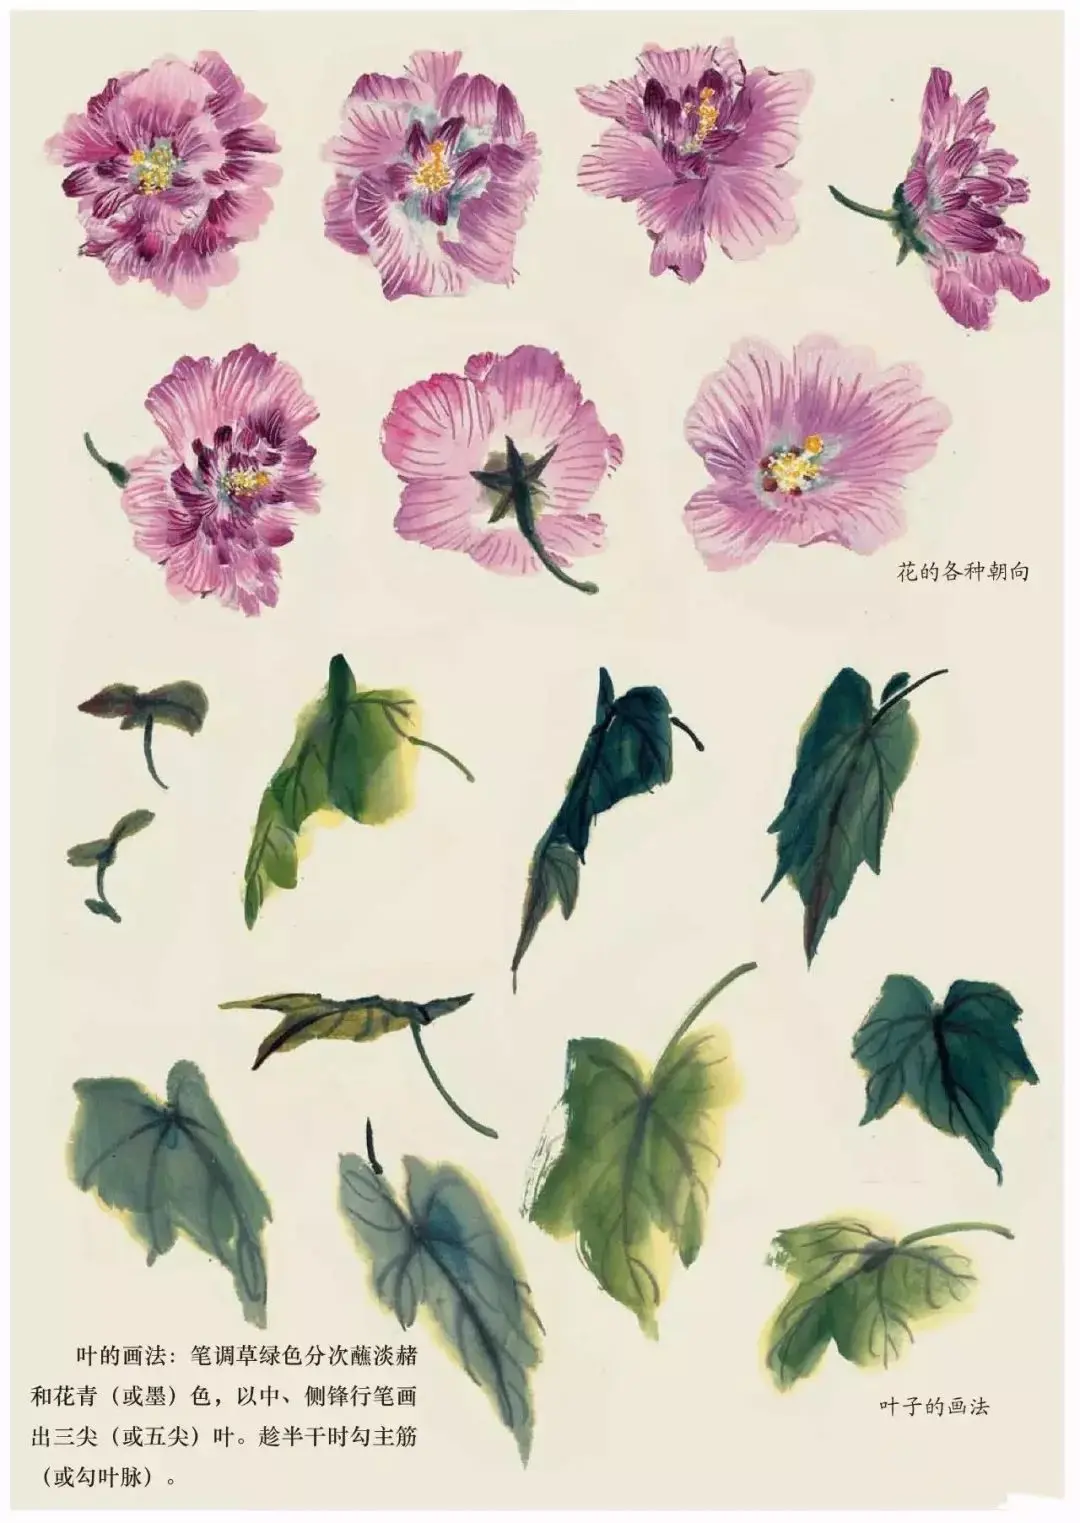 国画中各种花卉的画法太全了 阿波罗新闻网